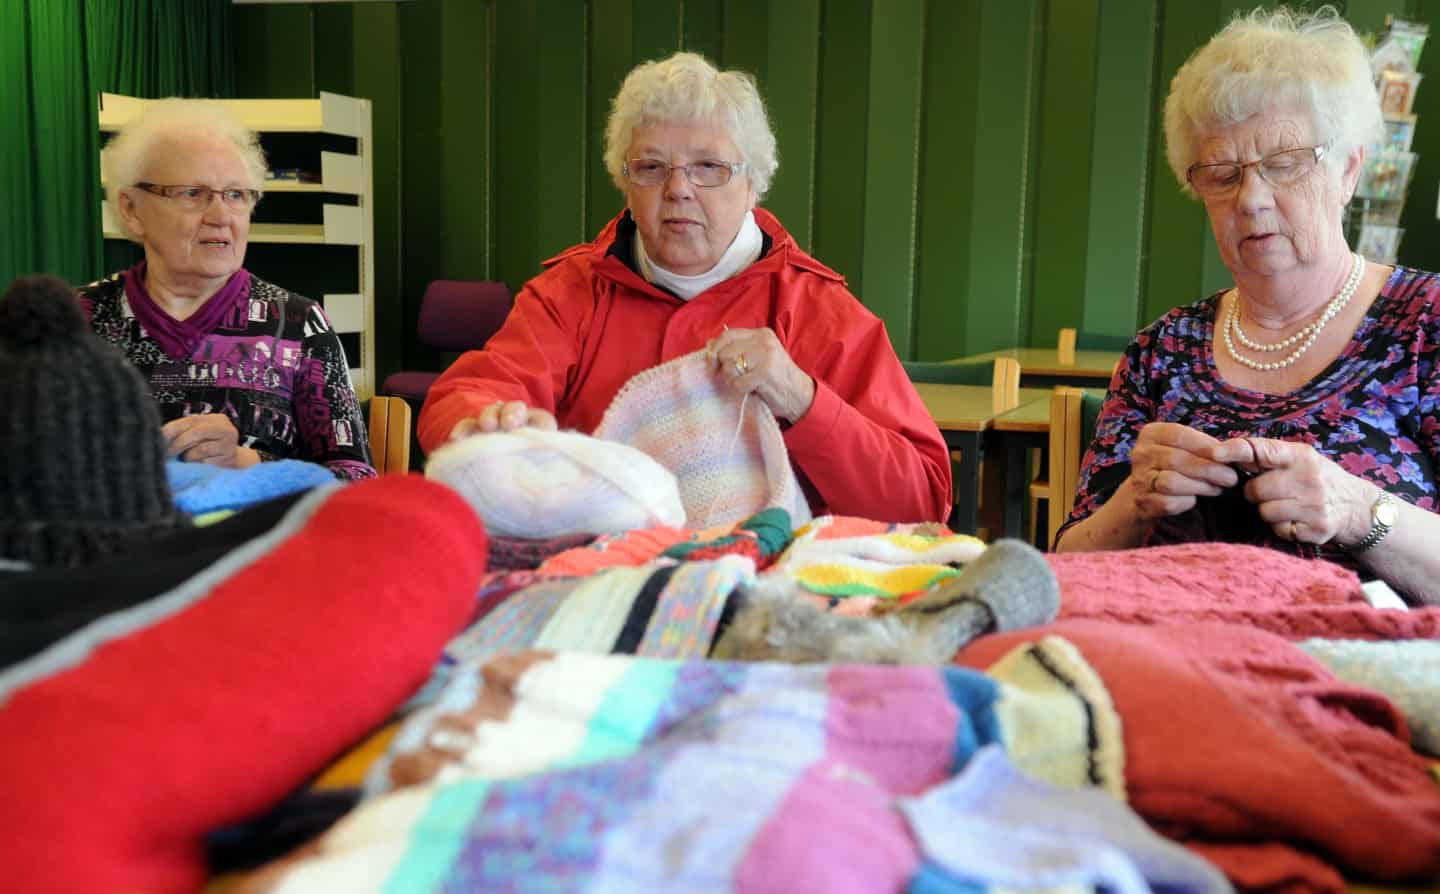 800 par strømper og 400 tæpper: I 10 år lokale kvinder hjulpet hjemløse - nu vil de gerne være flere | ugeavisen.dk